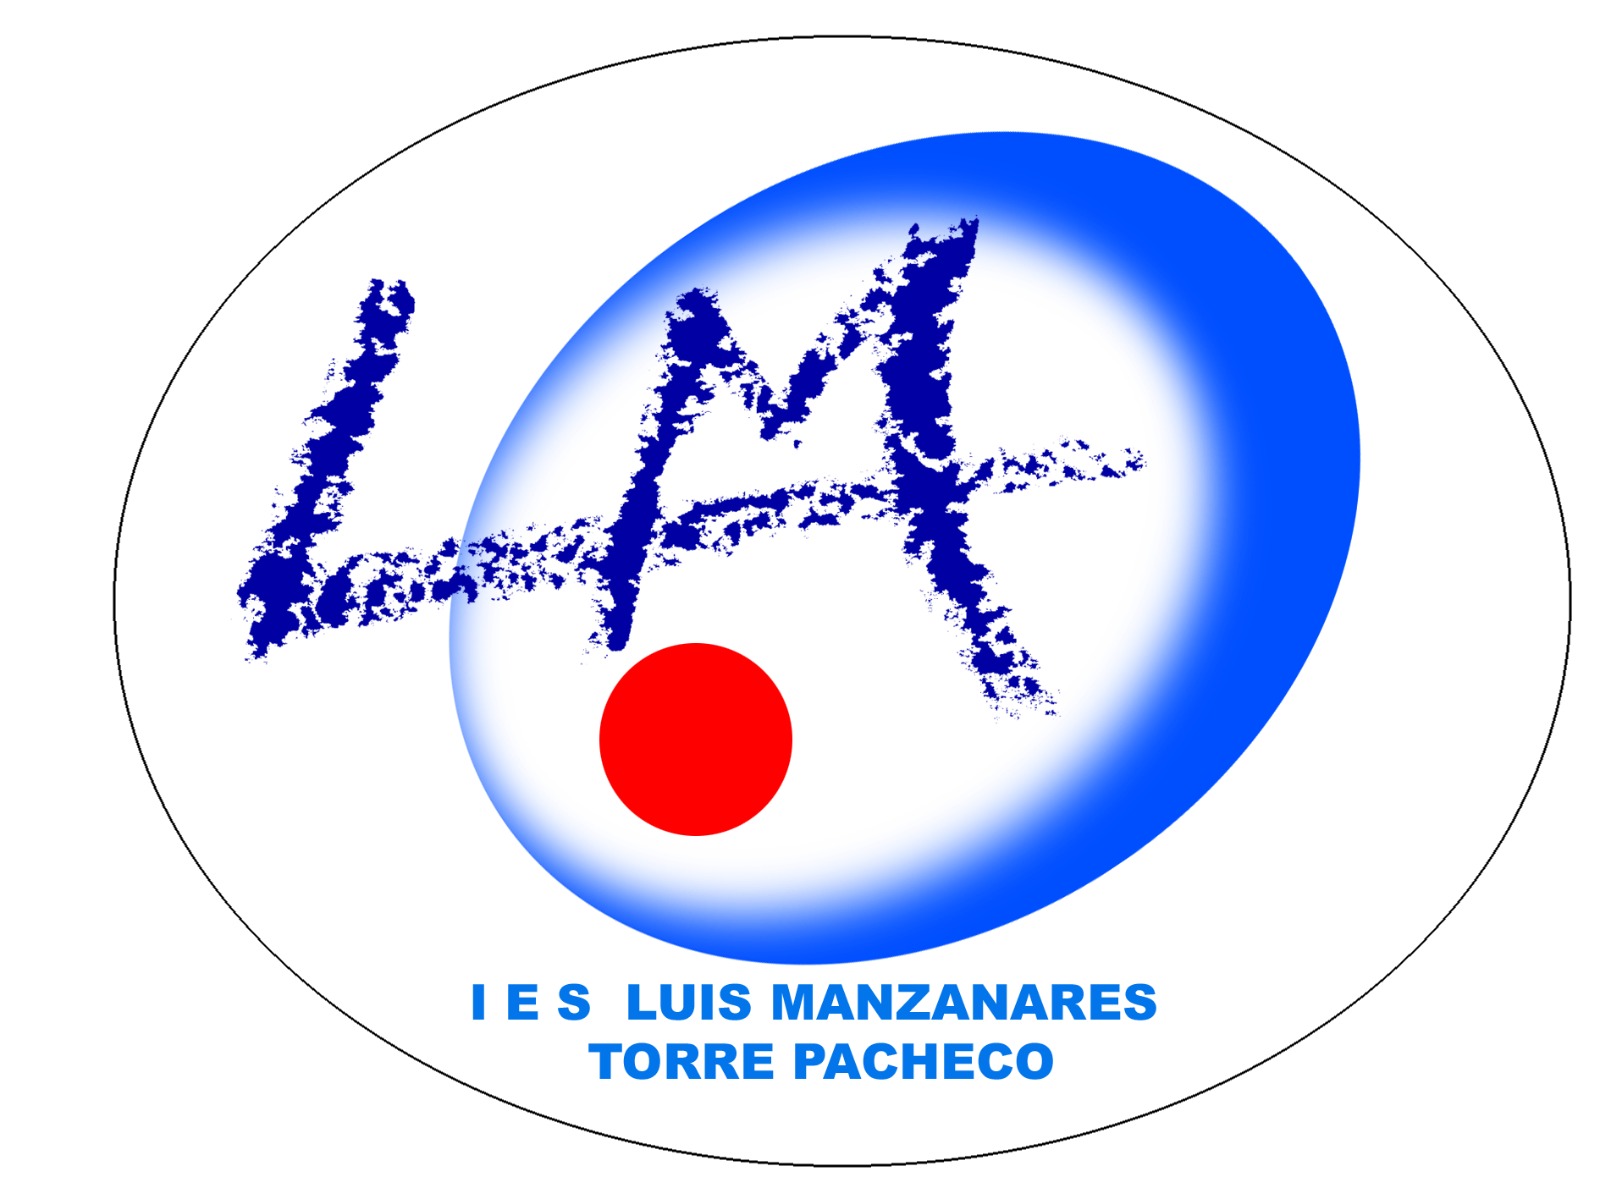 IES LUIS MANZANARES logo